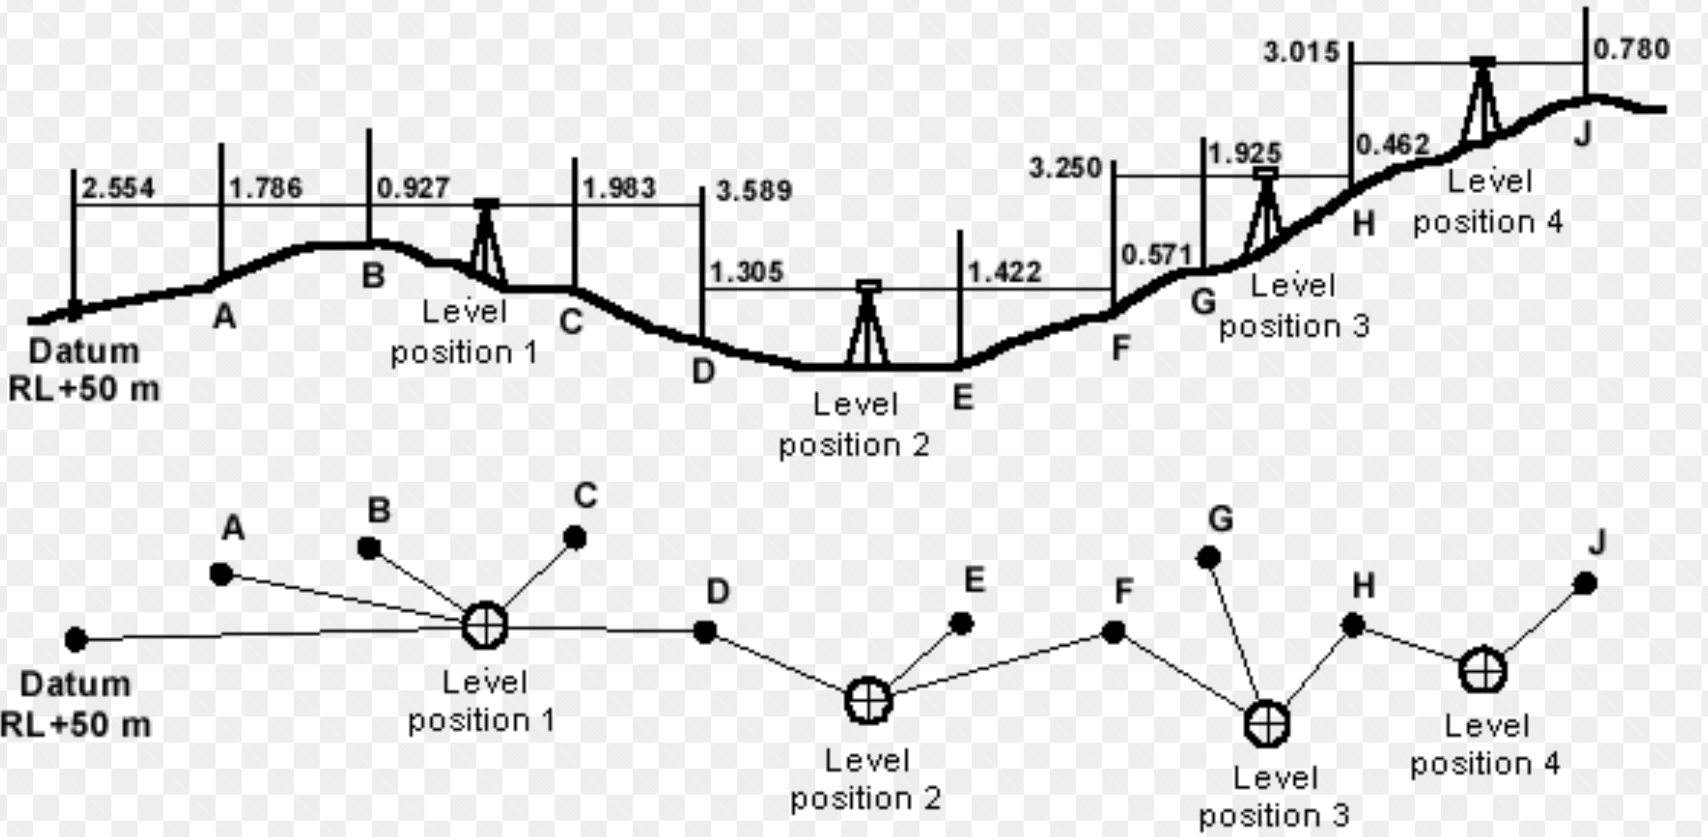 Level line система. Leveling position. Уровни лайна в вайлдр рифт. Line by line Leveling. Levelling rules